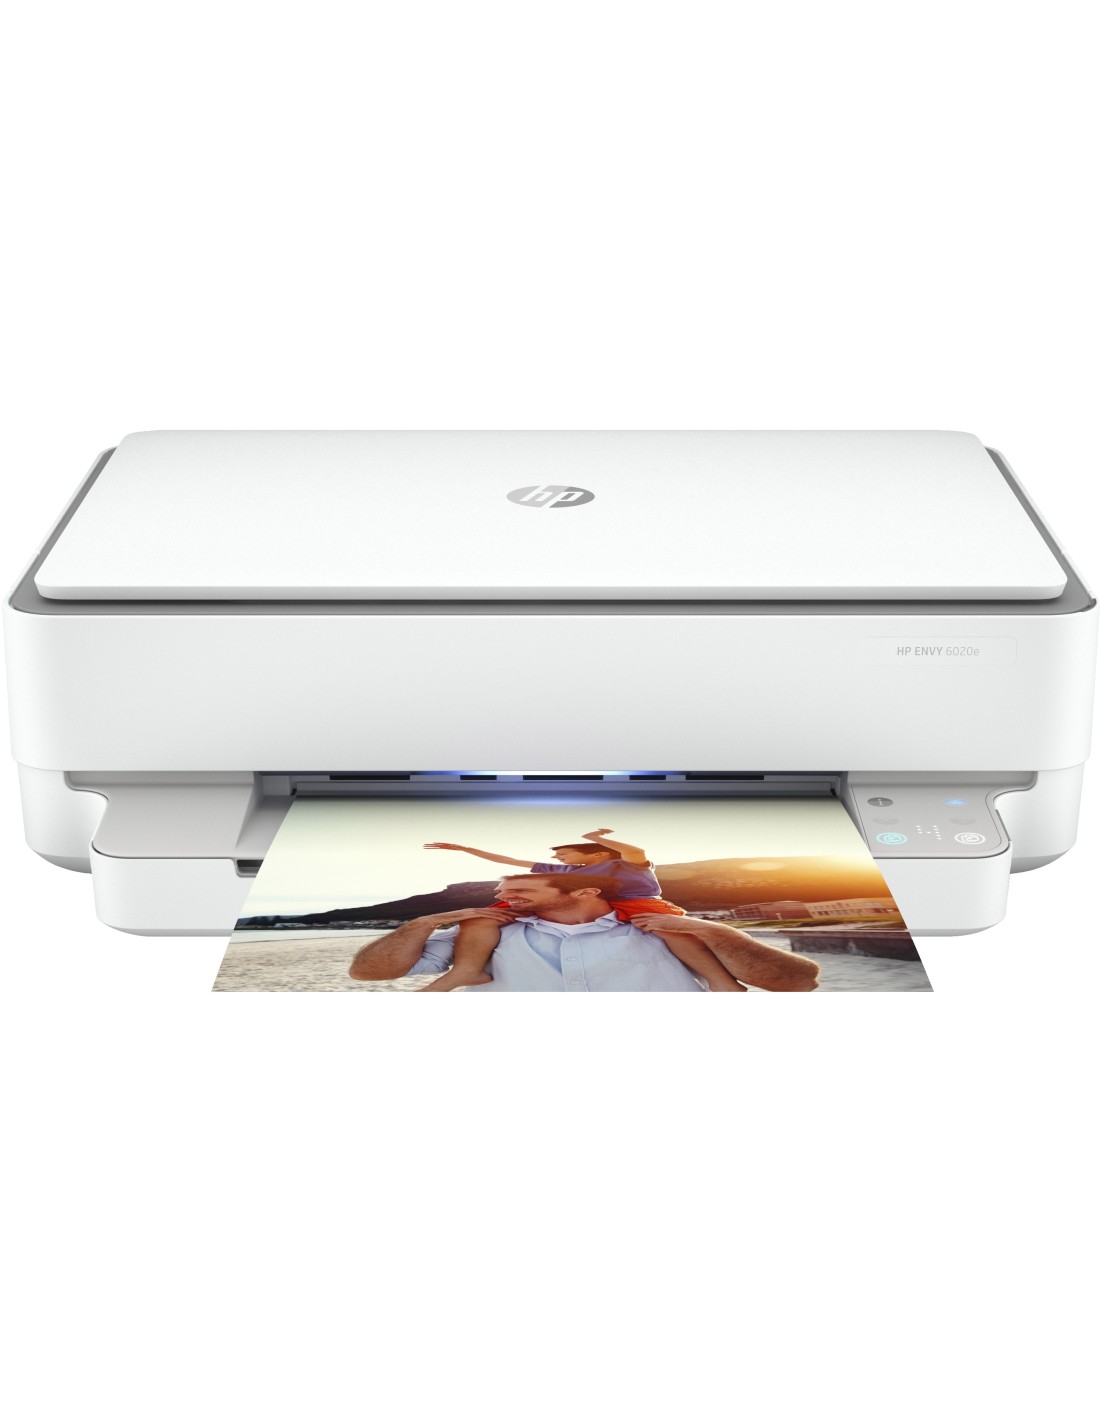 https://ultimainformatica.com/2417364-thickbox_default/hp-envy-impresora-multifuncion-hp-6020e-color-impresora-para-home-y-home-office-impresion-copia-escaner-conexion-inalambrica-hp.jpg